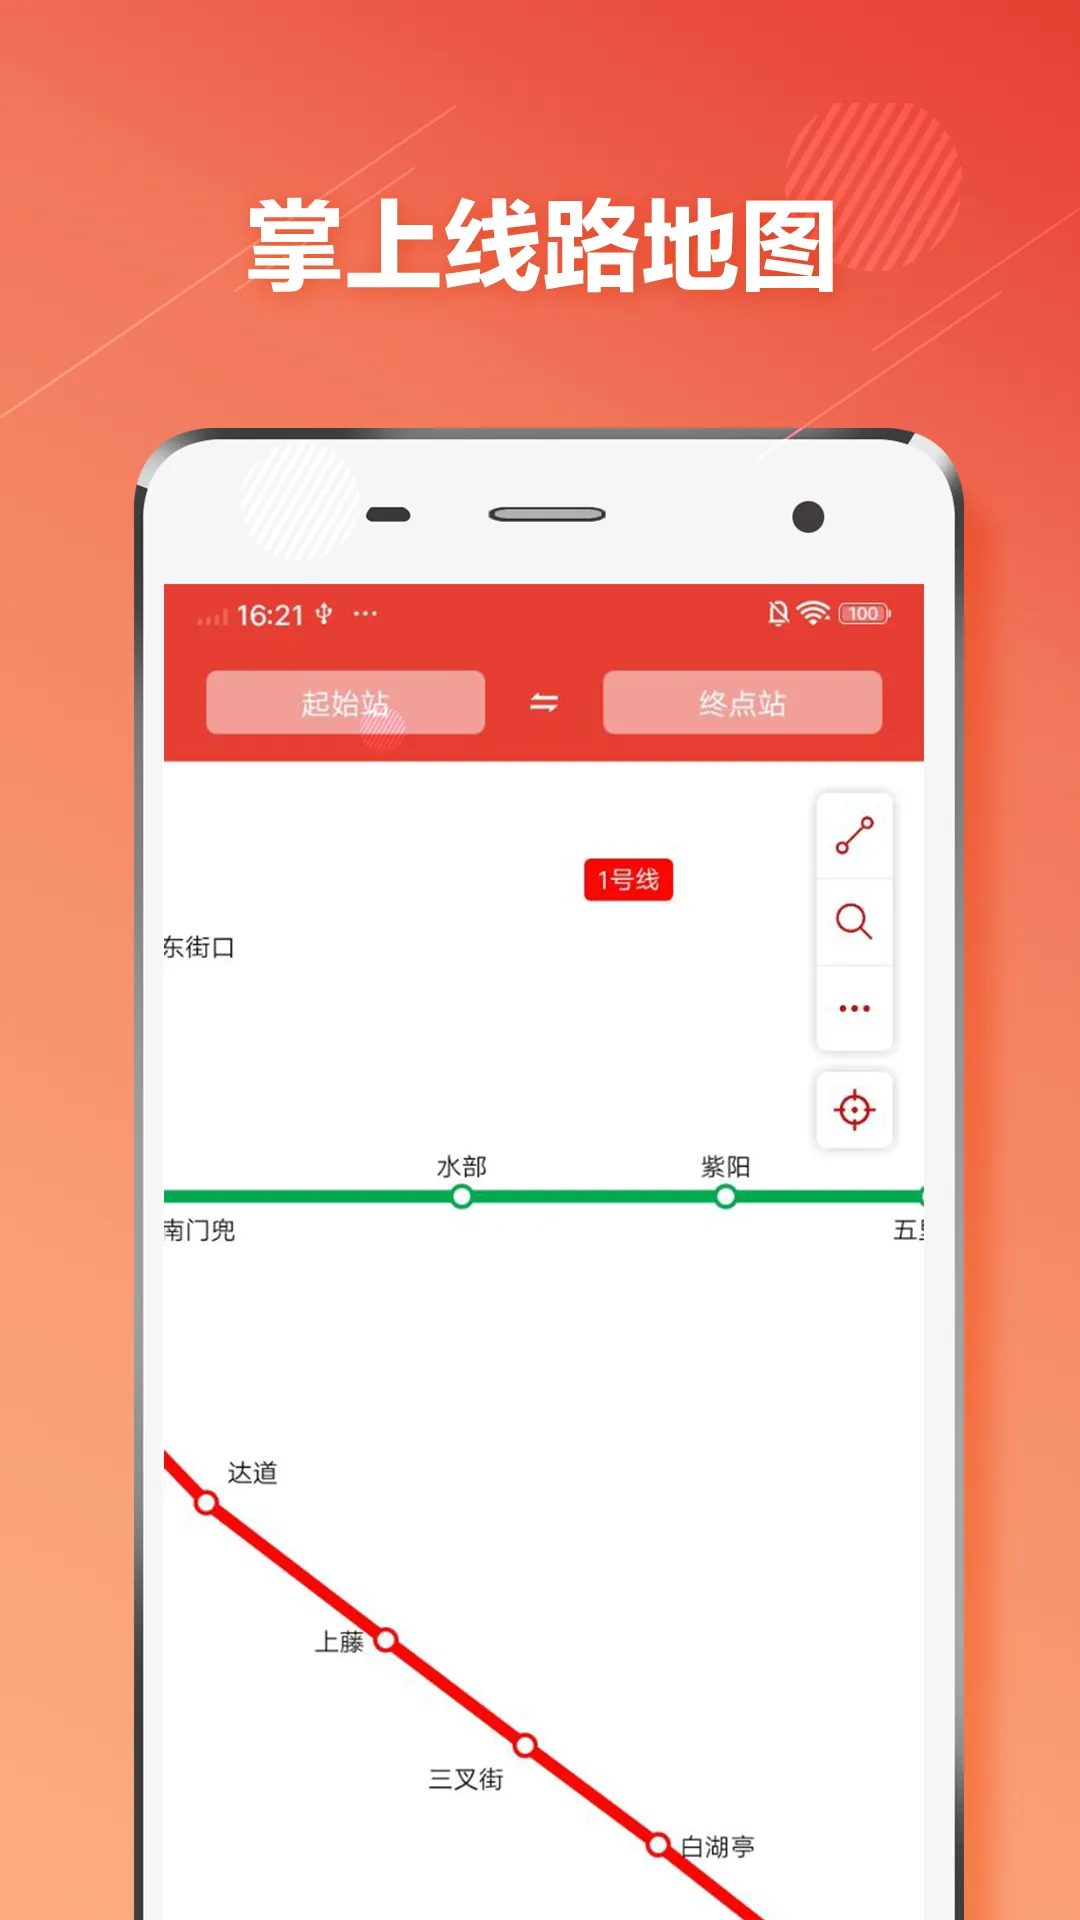 福州地铁app叫什么推荐 好用的福州地铁app下载最新版